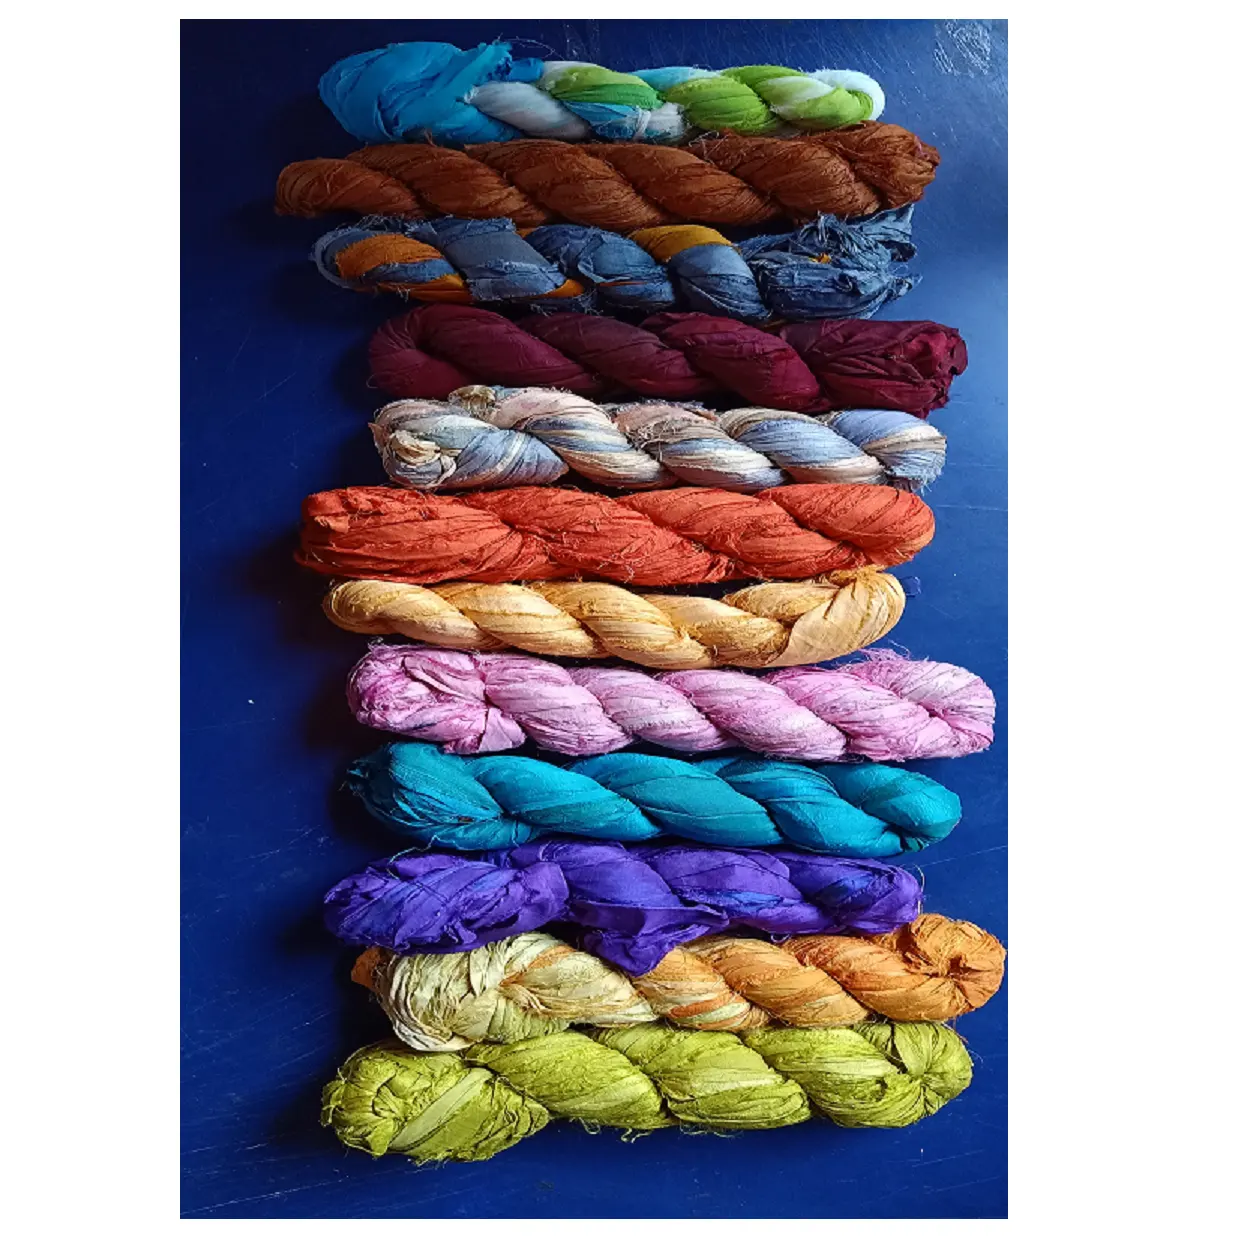 Ruban sari en soie douce, produit pour les magasins de fils, les fibres et les bijoux, disponible dans des brochettes de 100 grammes